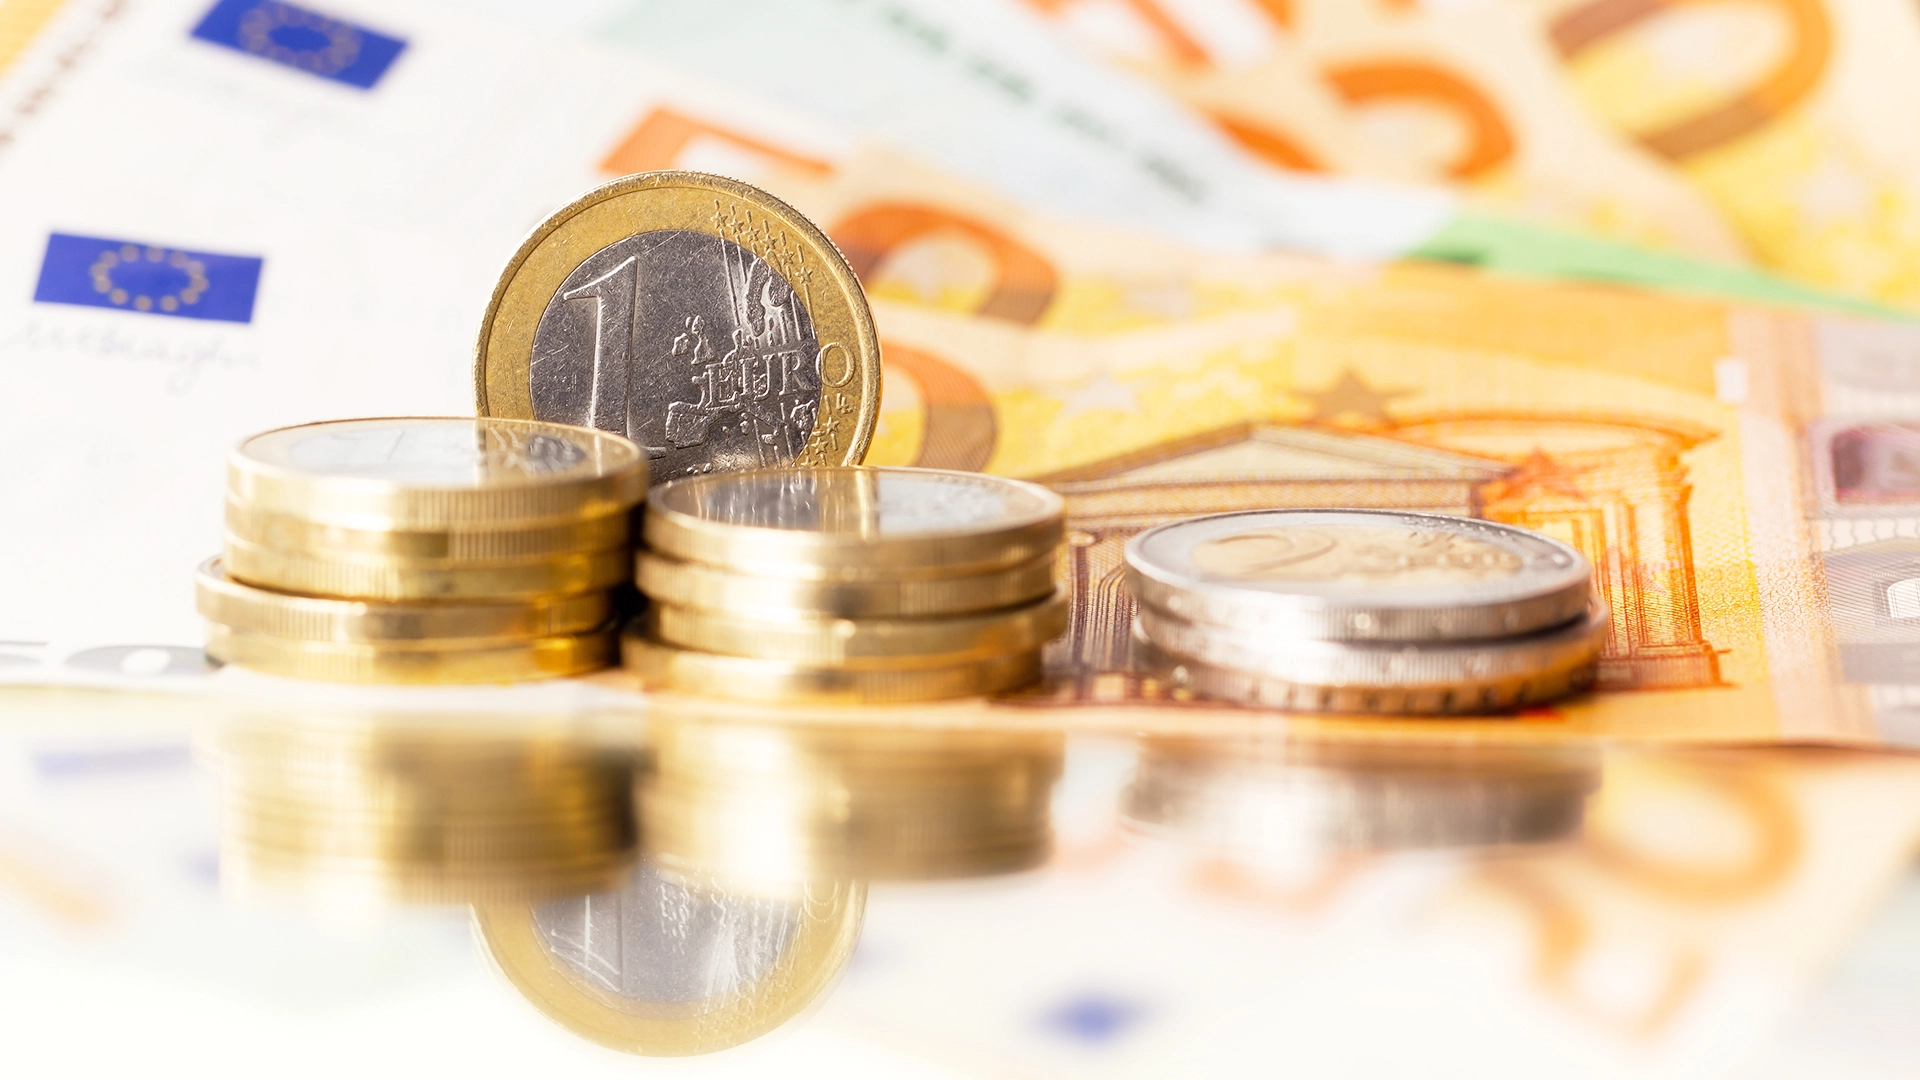 Sparkasse bietet jetzt Prämie für Konto und Depot sowie hohe Zinsen für Tagesgeld und Festgeld (Foto: Torsten-Asmus/iStock)